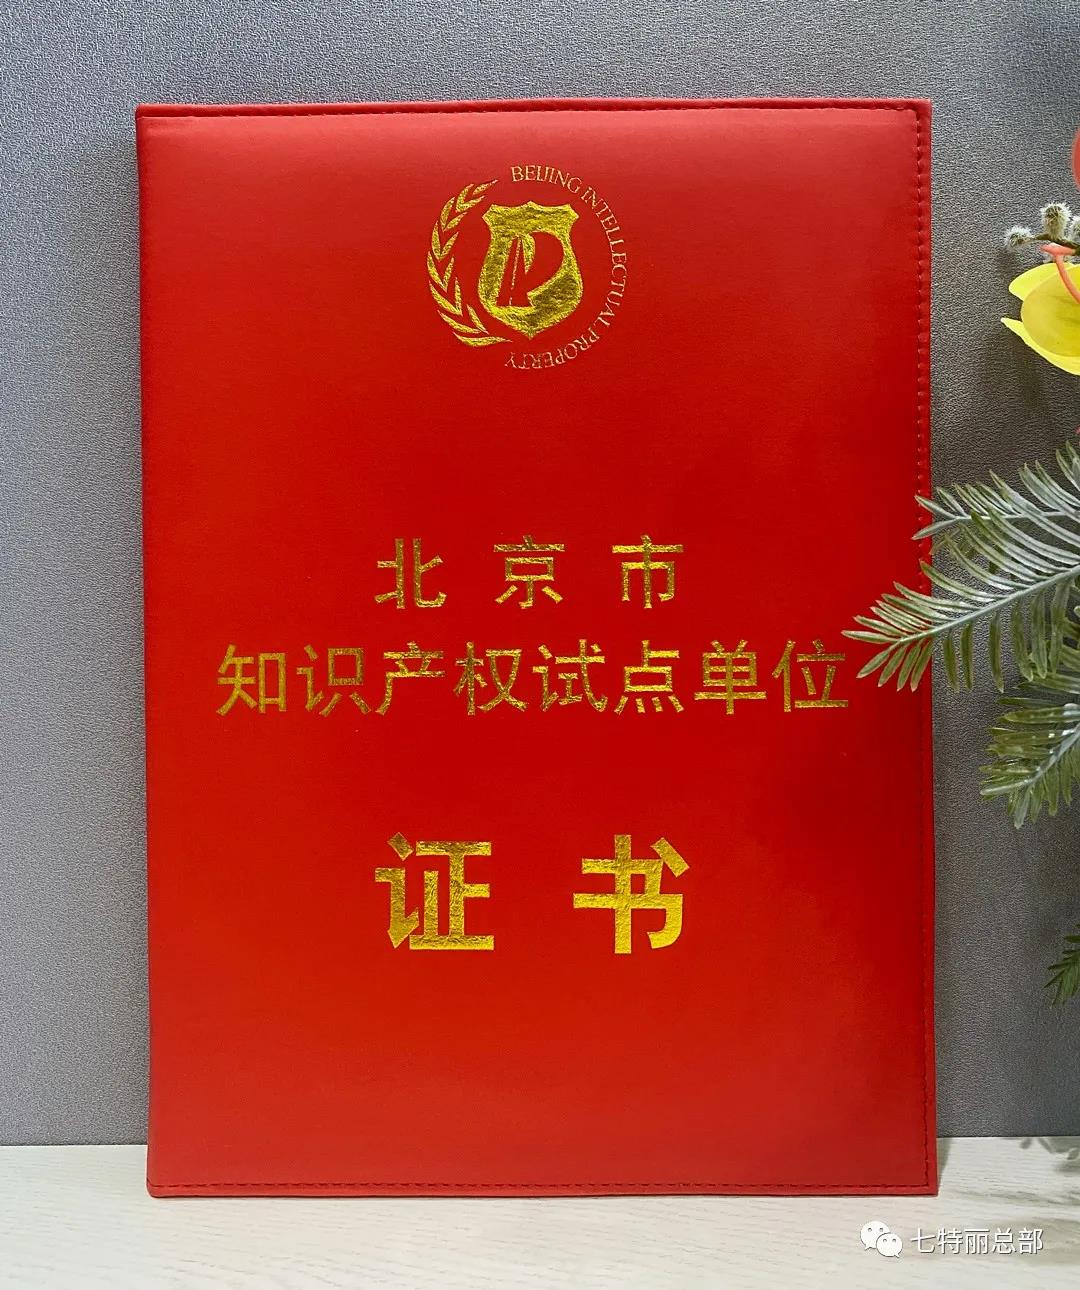 七特丽再度荣获“北京市知识产权试点单位”证书